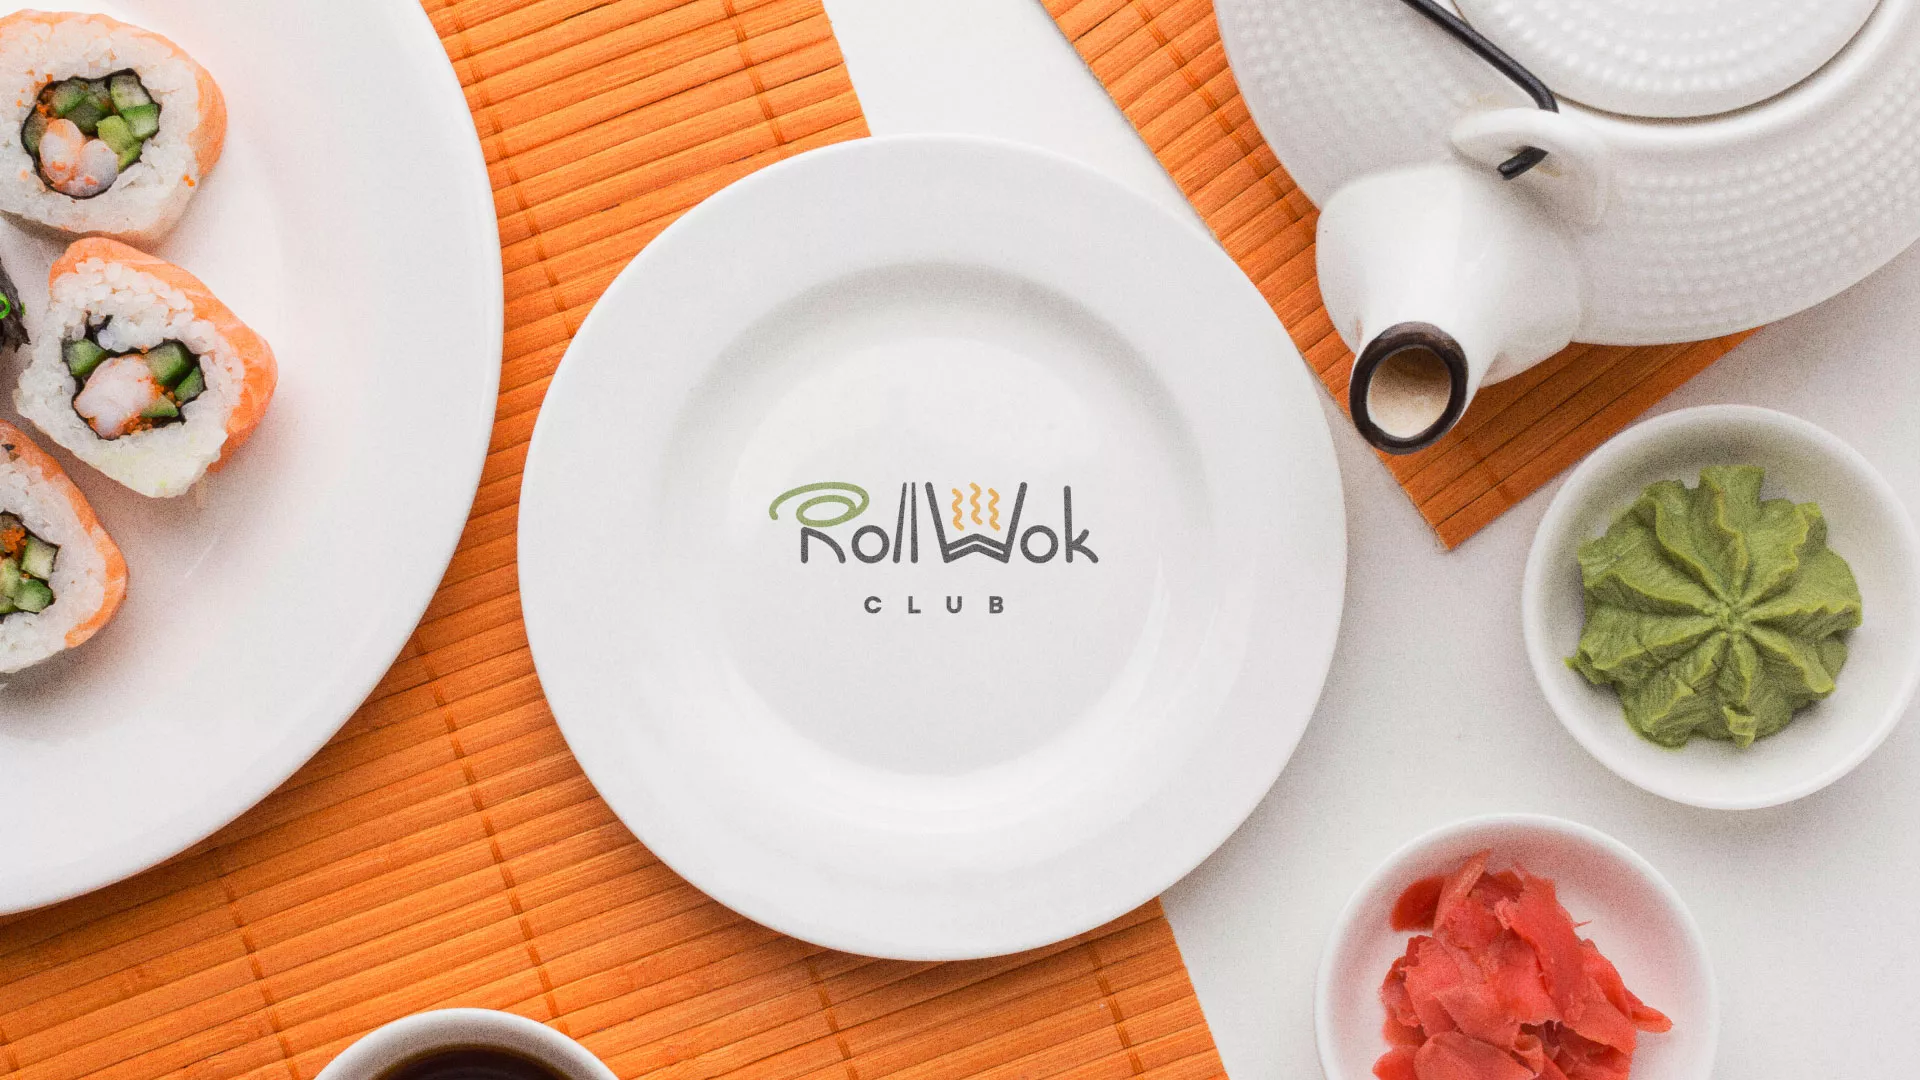 Разработка логотипа и фирменного стиля суши-бара «Roll Wok Club» в Норильске